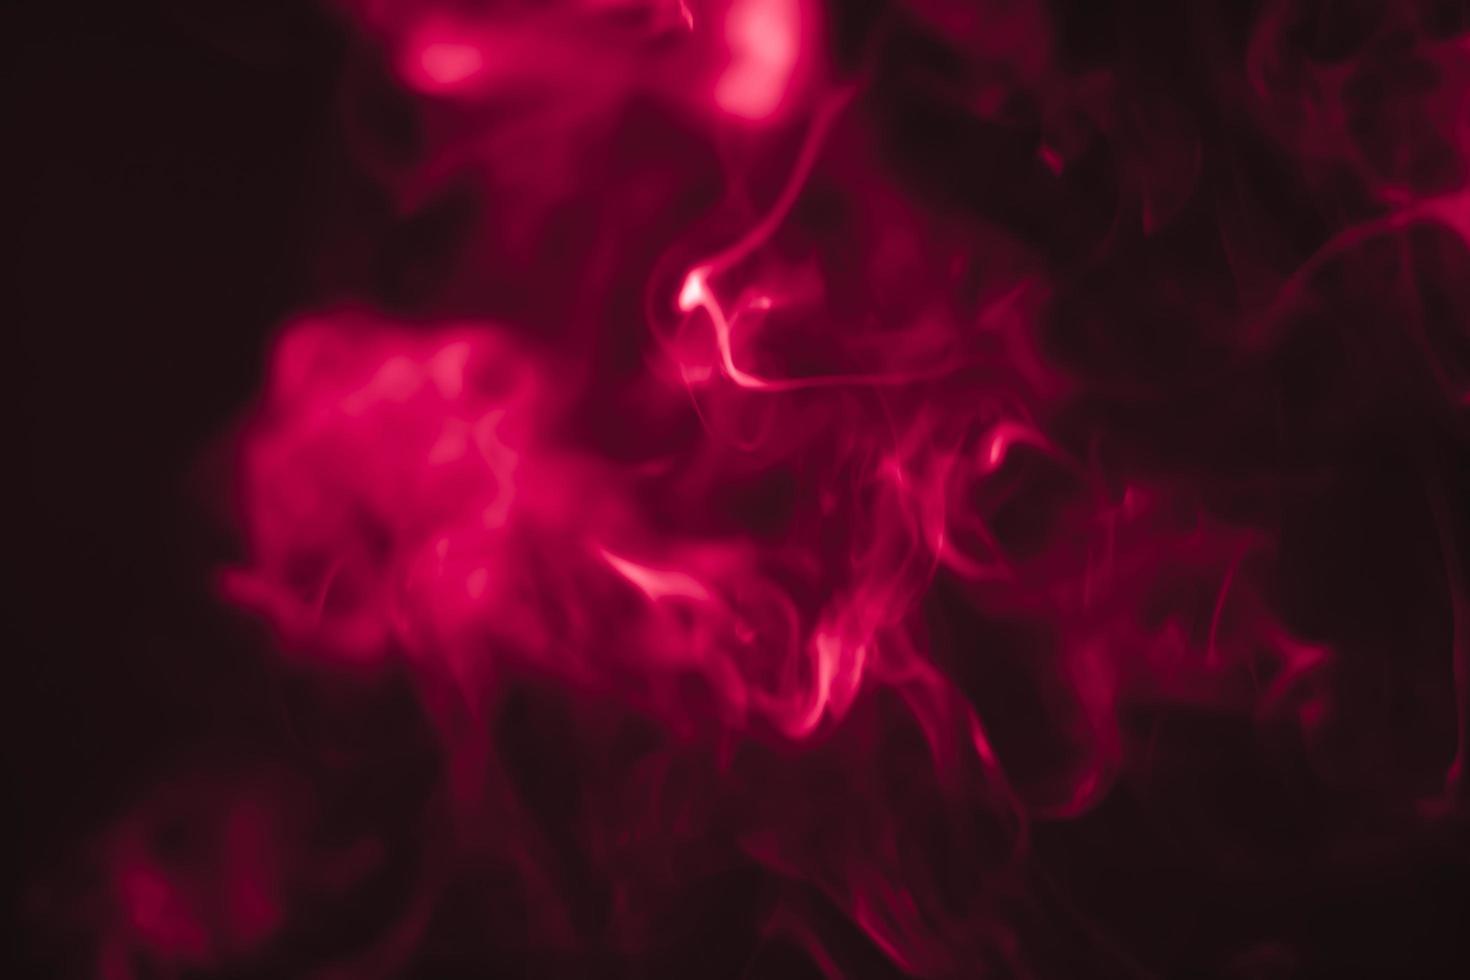 humo rojo en una habitación oscura en un fondo negro foto